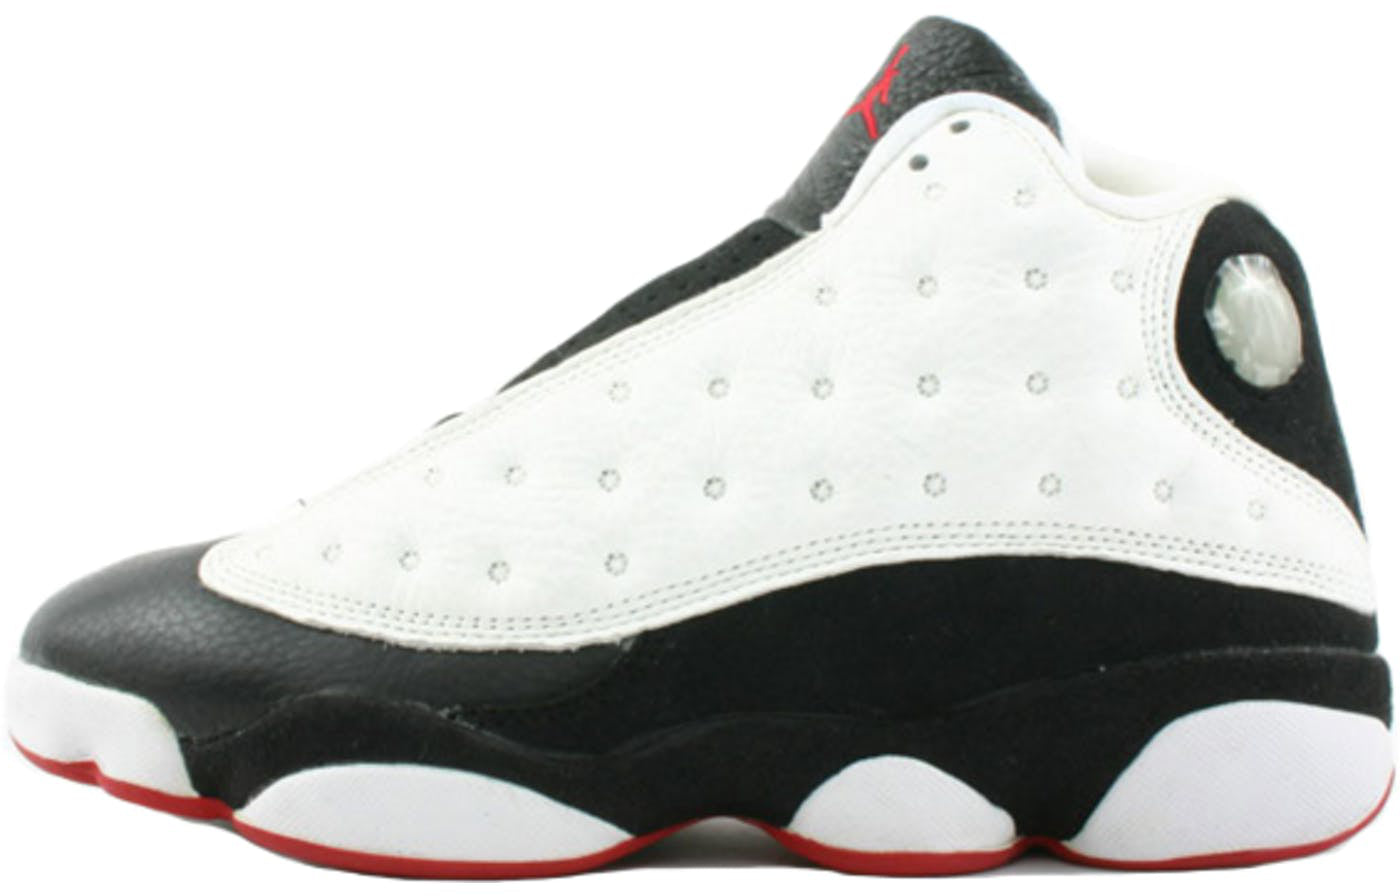 Air Jordan 13 OG 'He Got Game' 1997 White/True Red/Black 136002-132